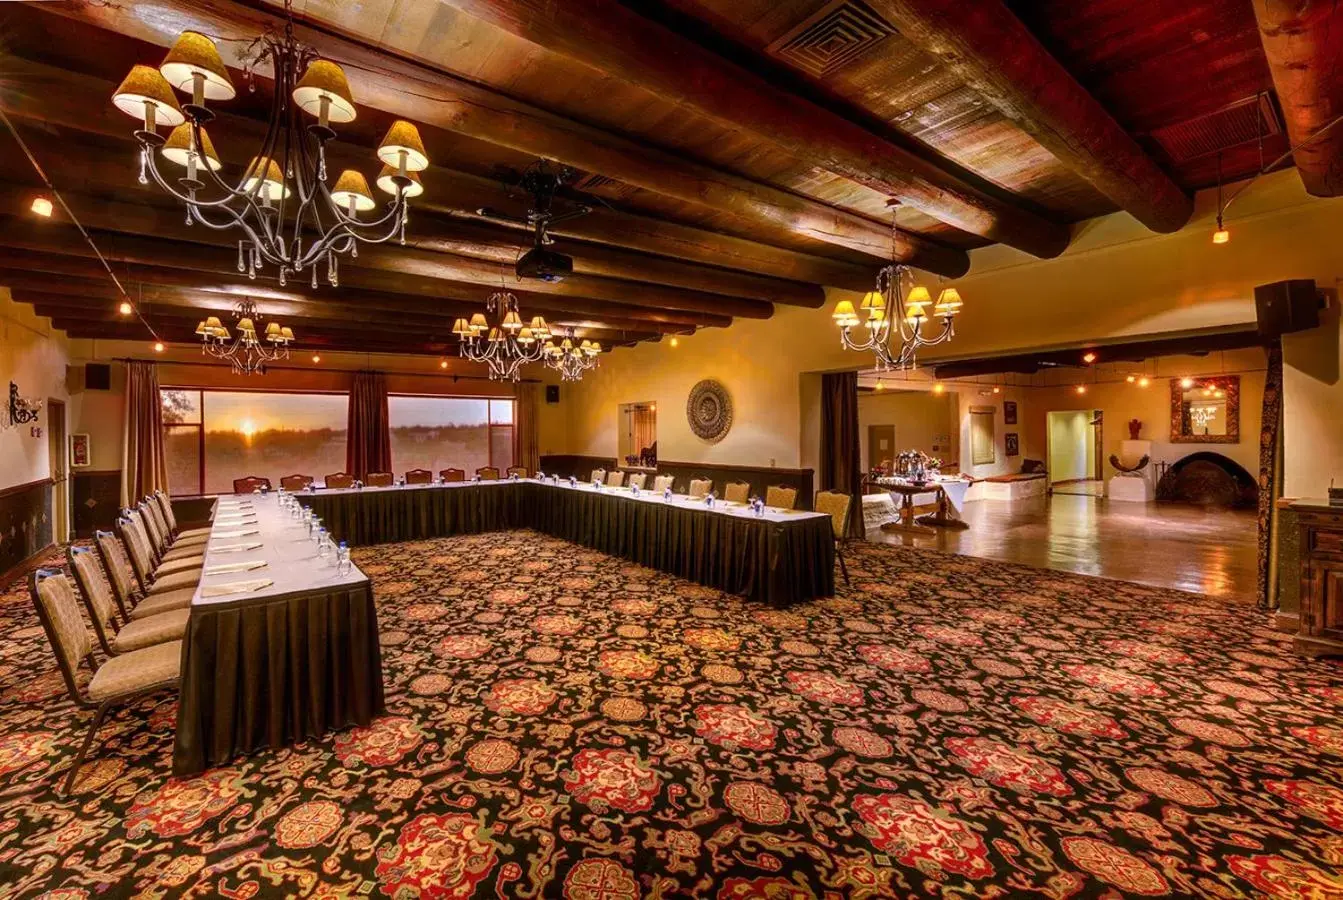 Banquet/Function facilities, Banquet Facilities in Hacienda del Sol Guest Ranch Resort